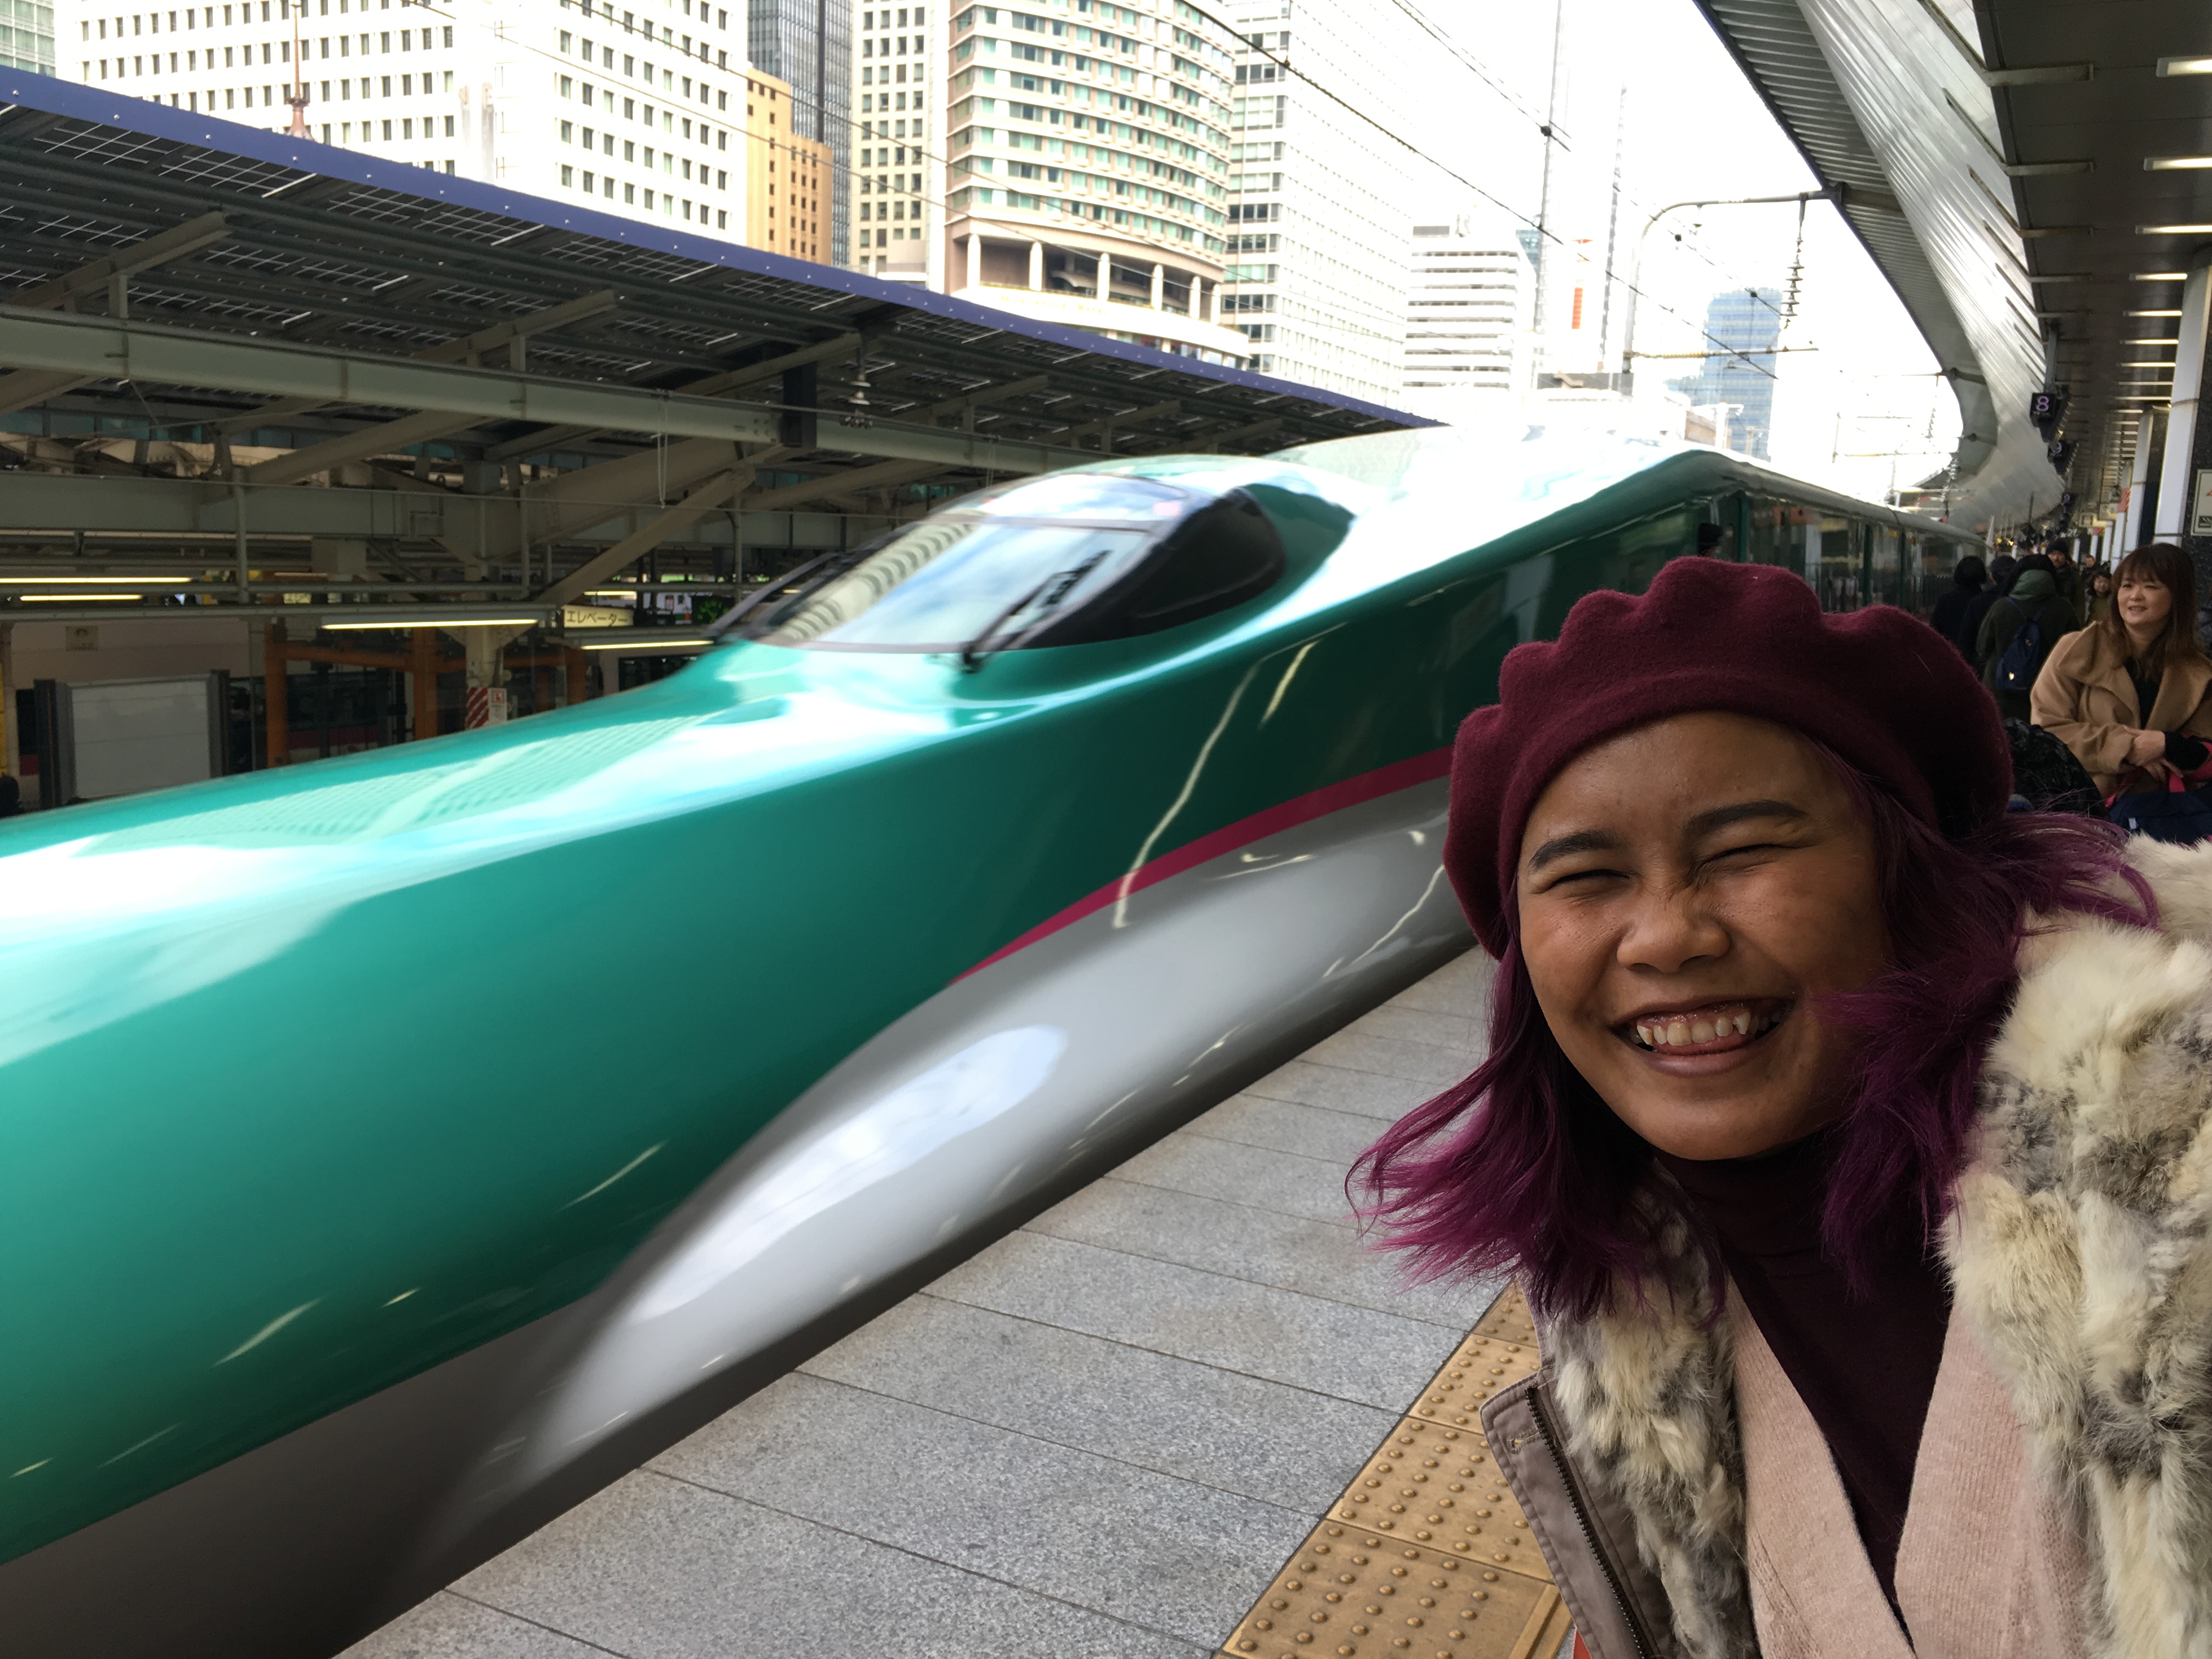 Shinkansen E5 series